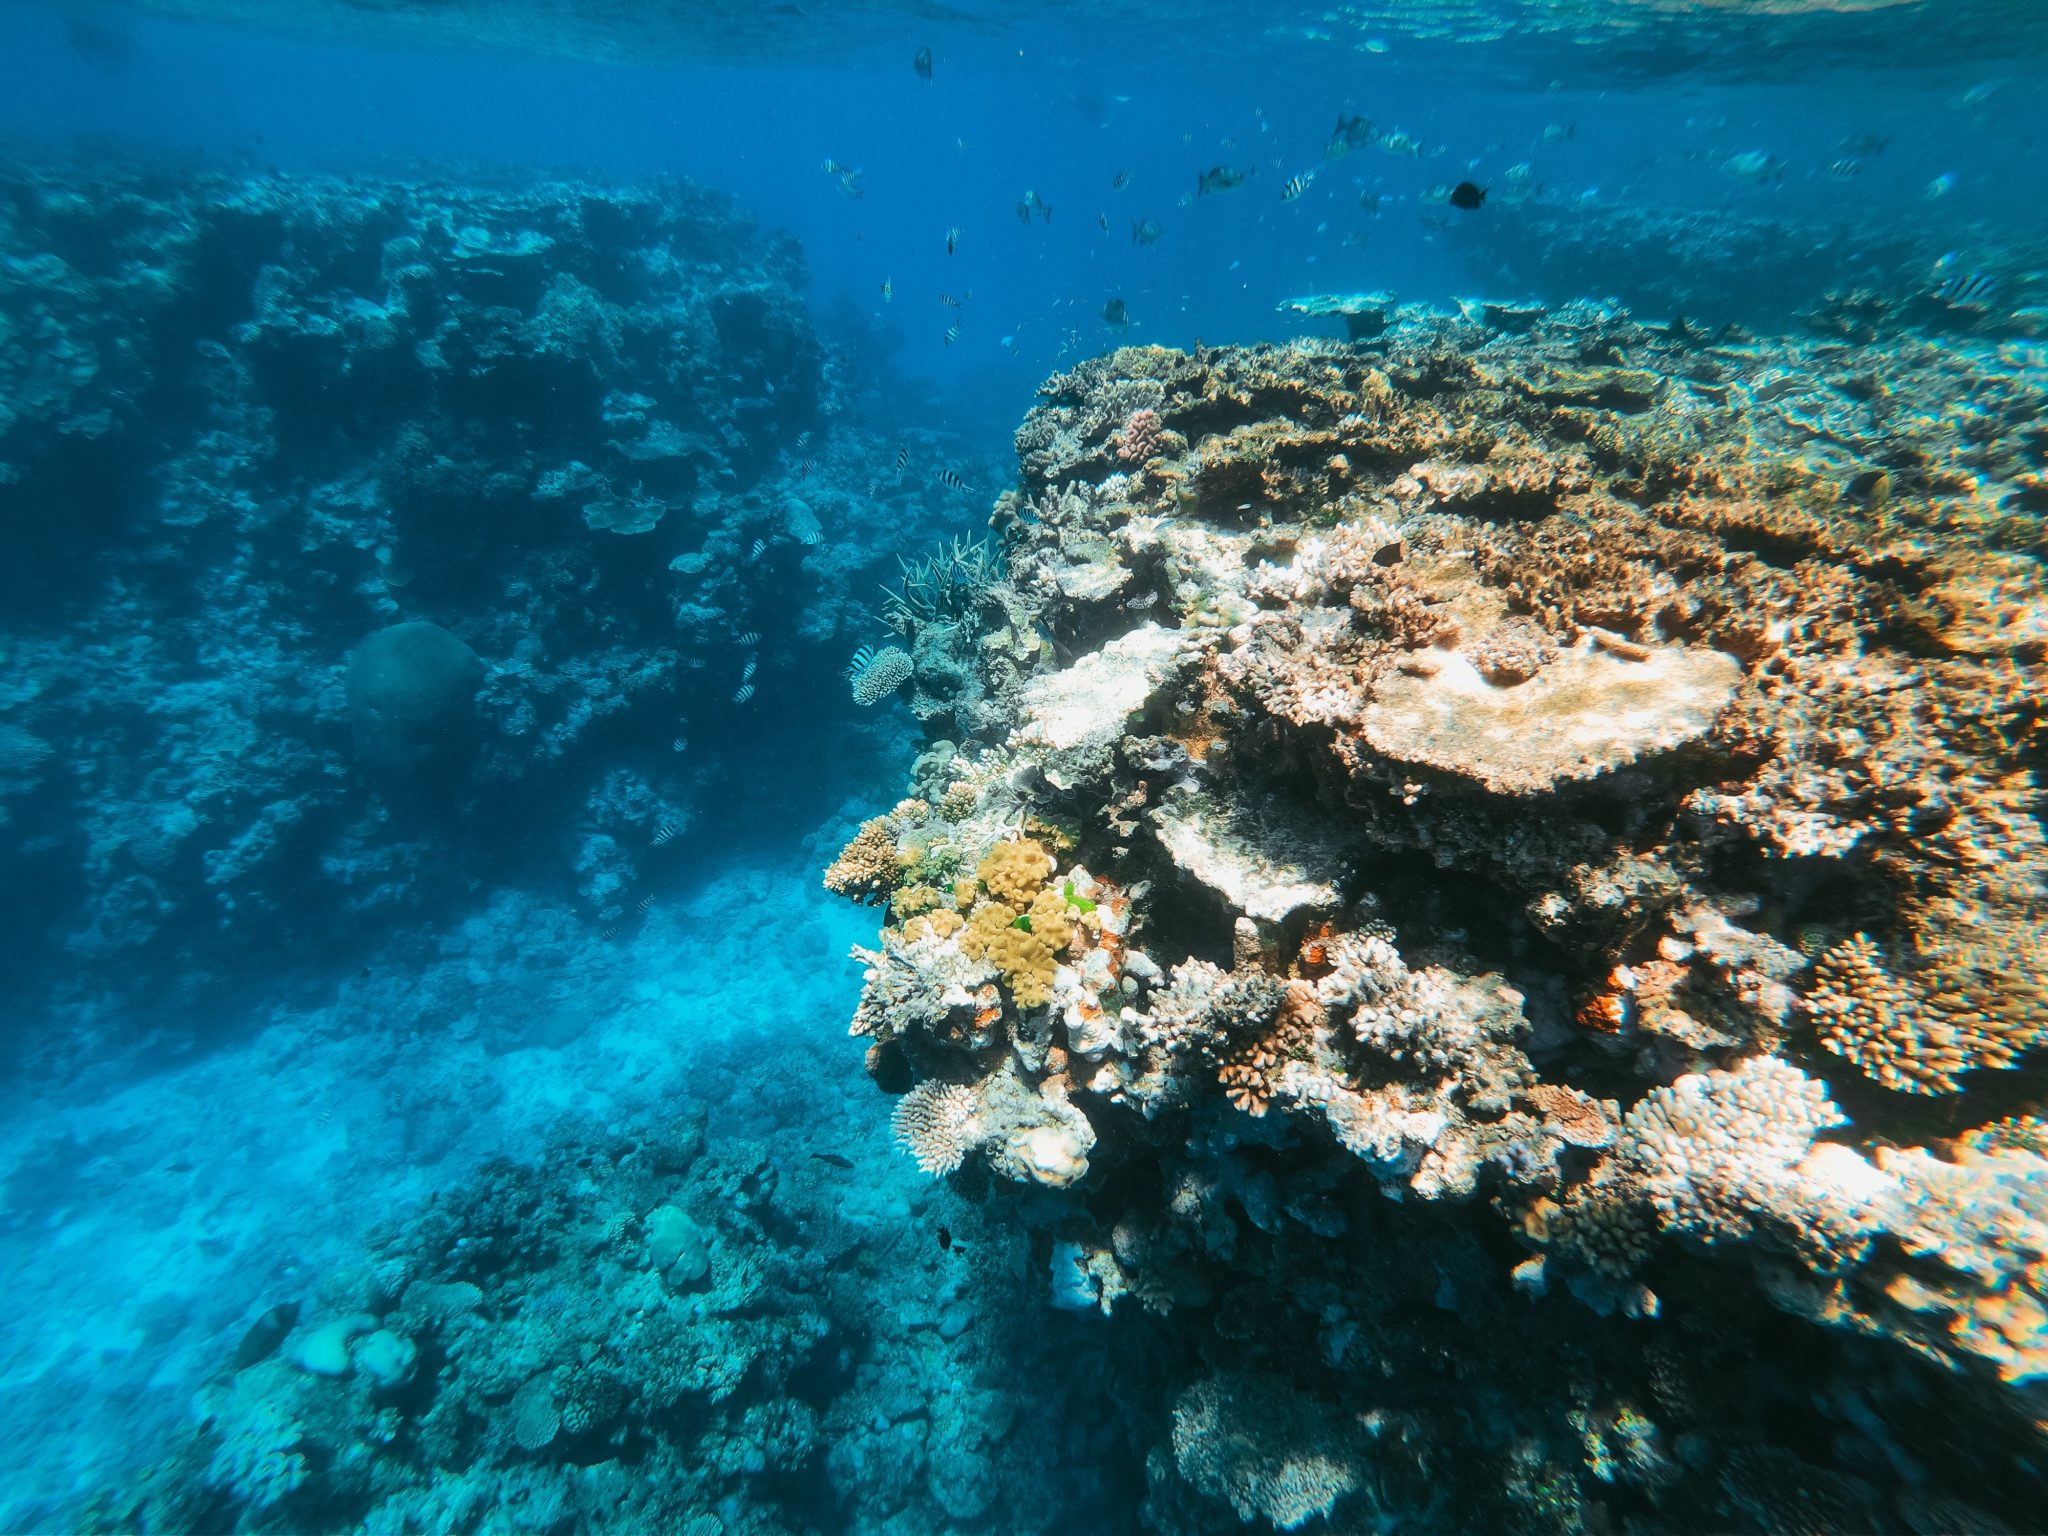 Links und rechts ragen zwei große, bunt bewachsene Steinkorallen aus dem Meeresboden, im Hintergrund tummeln sich kleine Fische